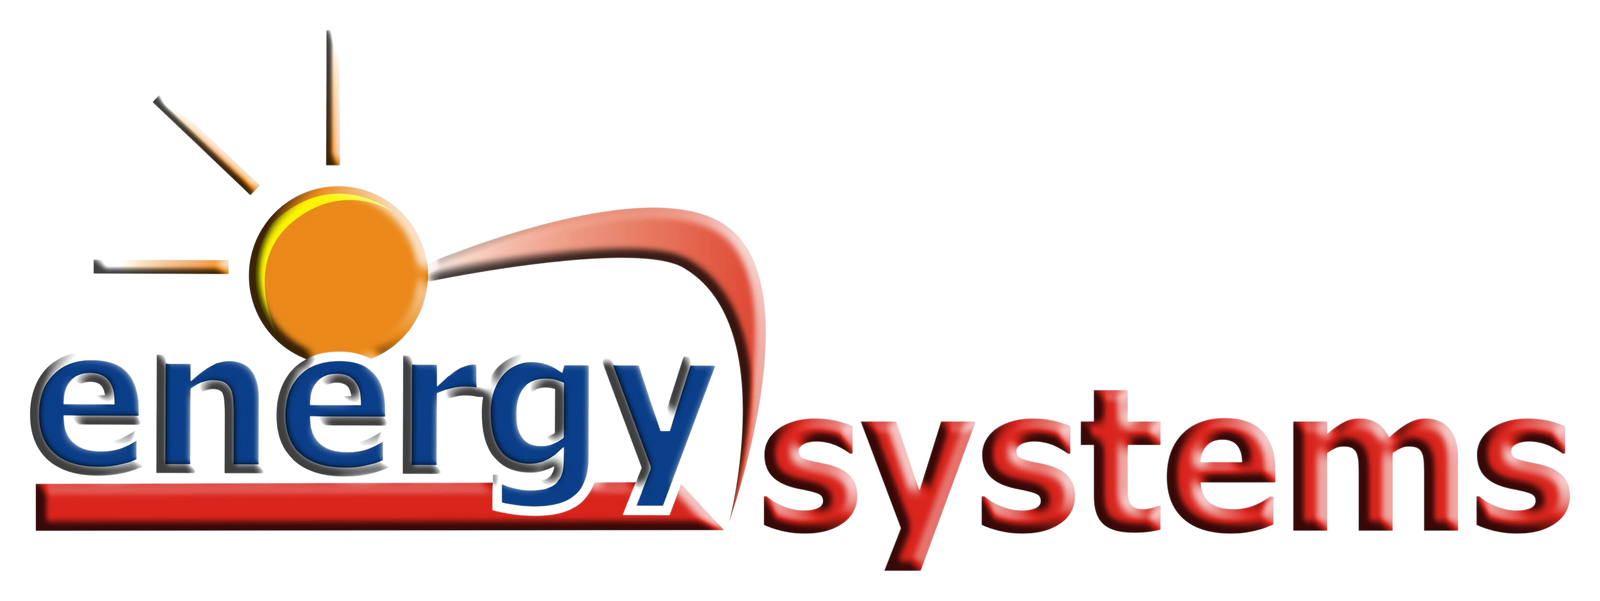 energy systesms logo